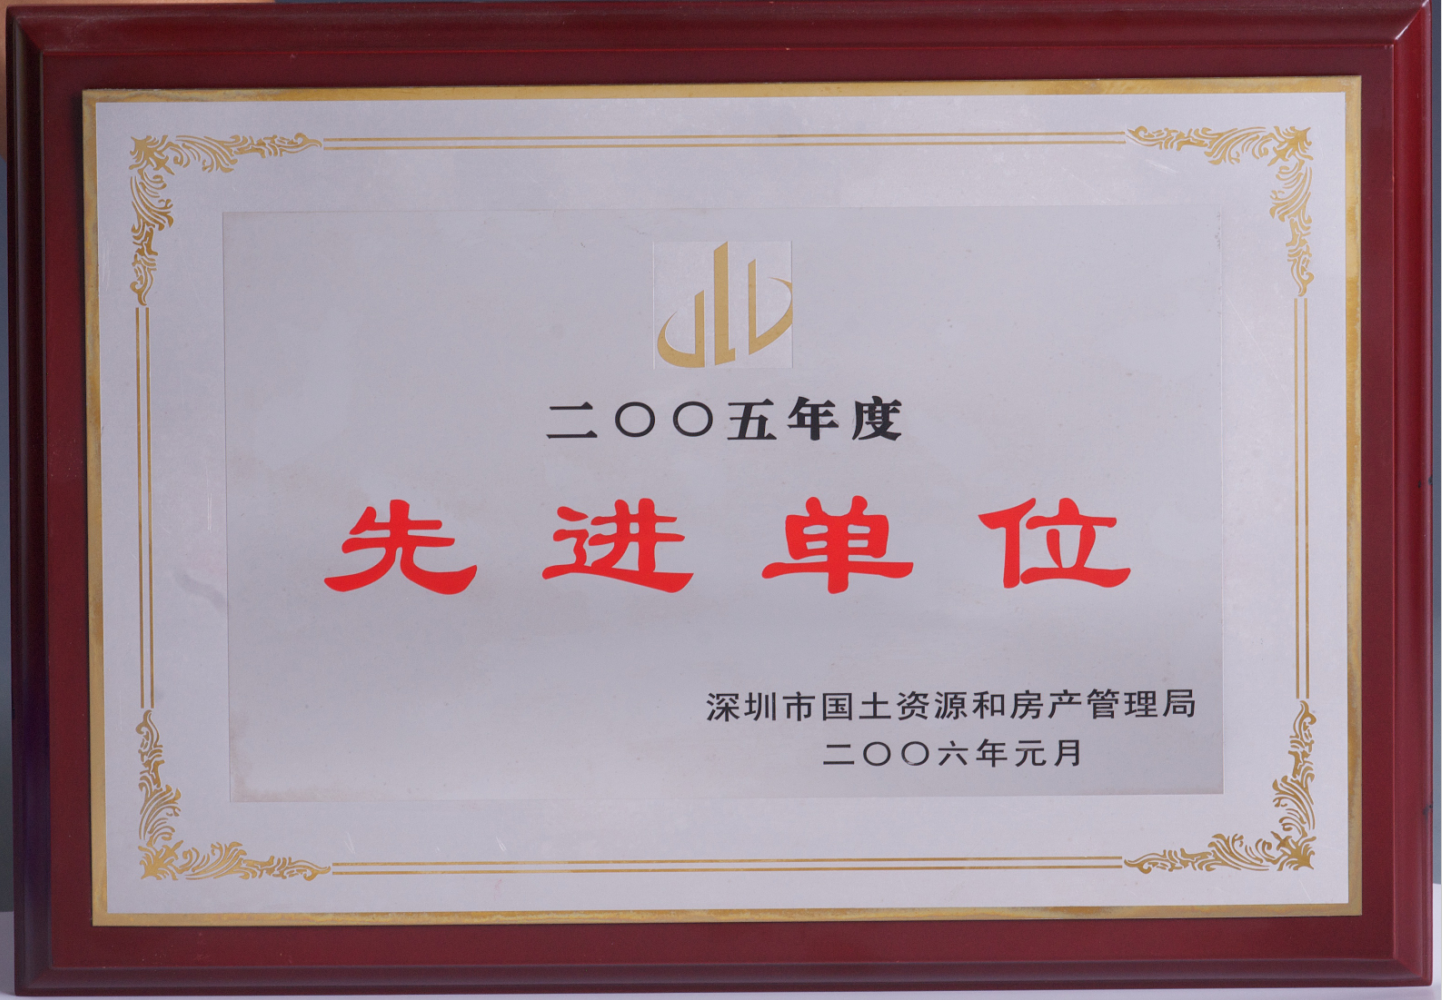 深圳市国土资源和房产管理局—2005年度先进单位